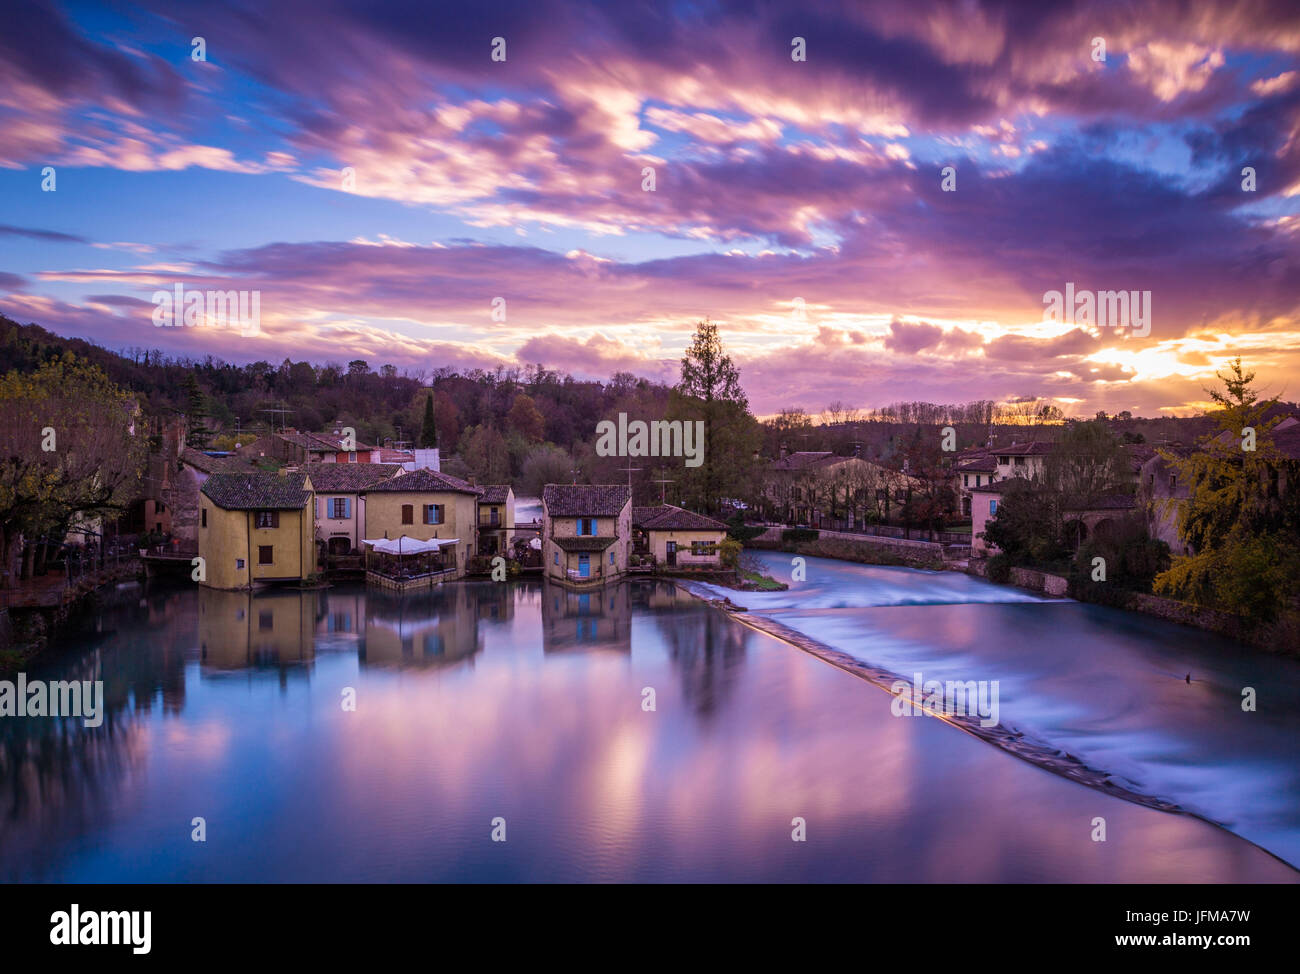 Valeggio sul Mincio, Veneto, Italy, Landscape view of the village during a colorful sunset, Stock Photo